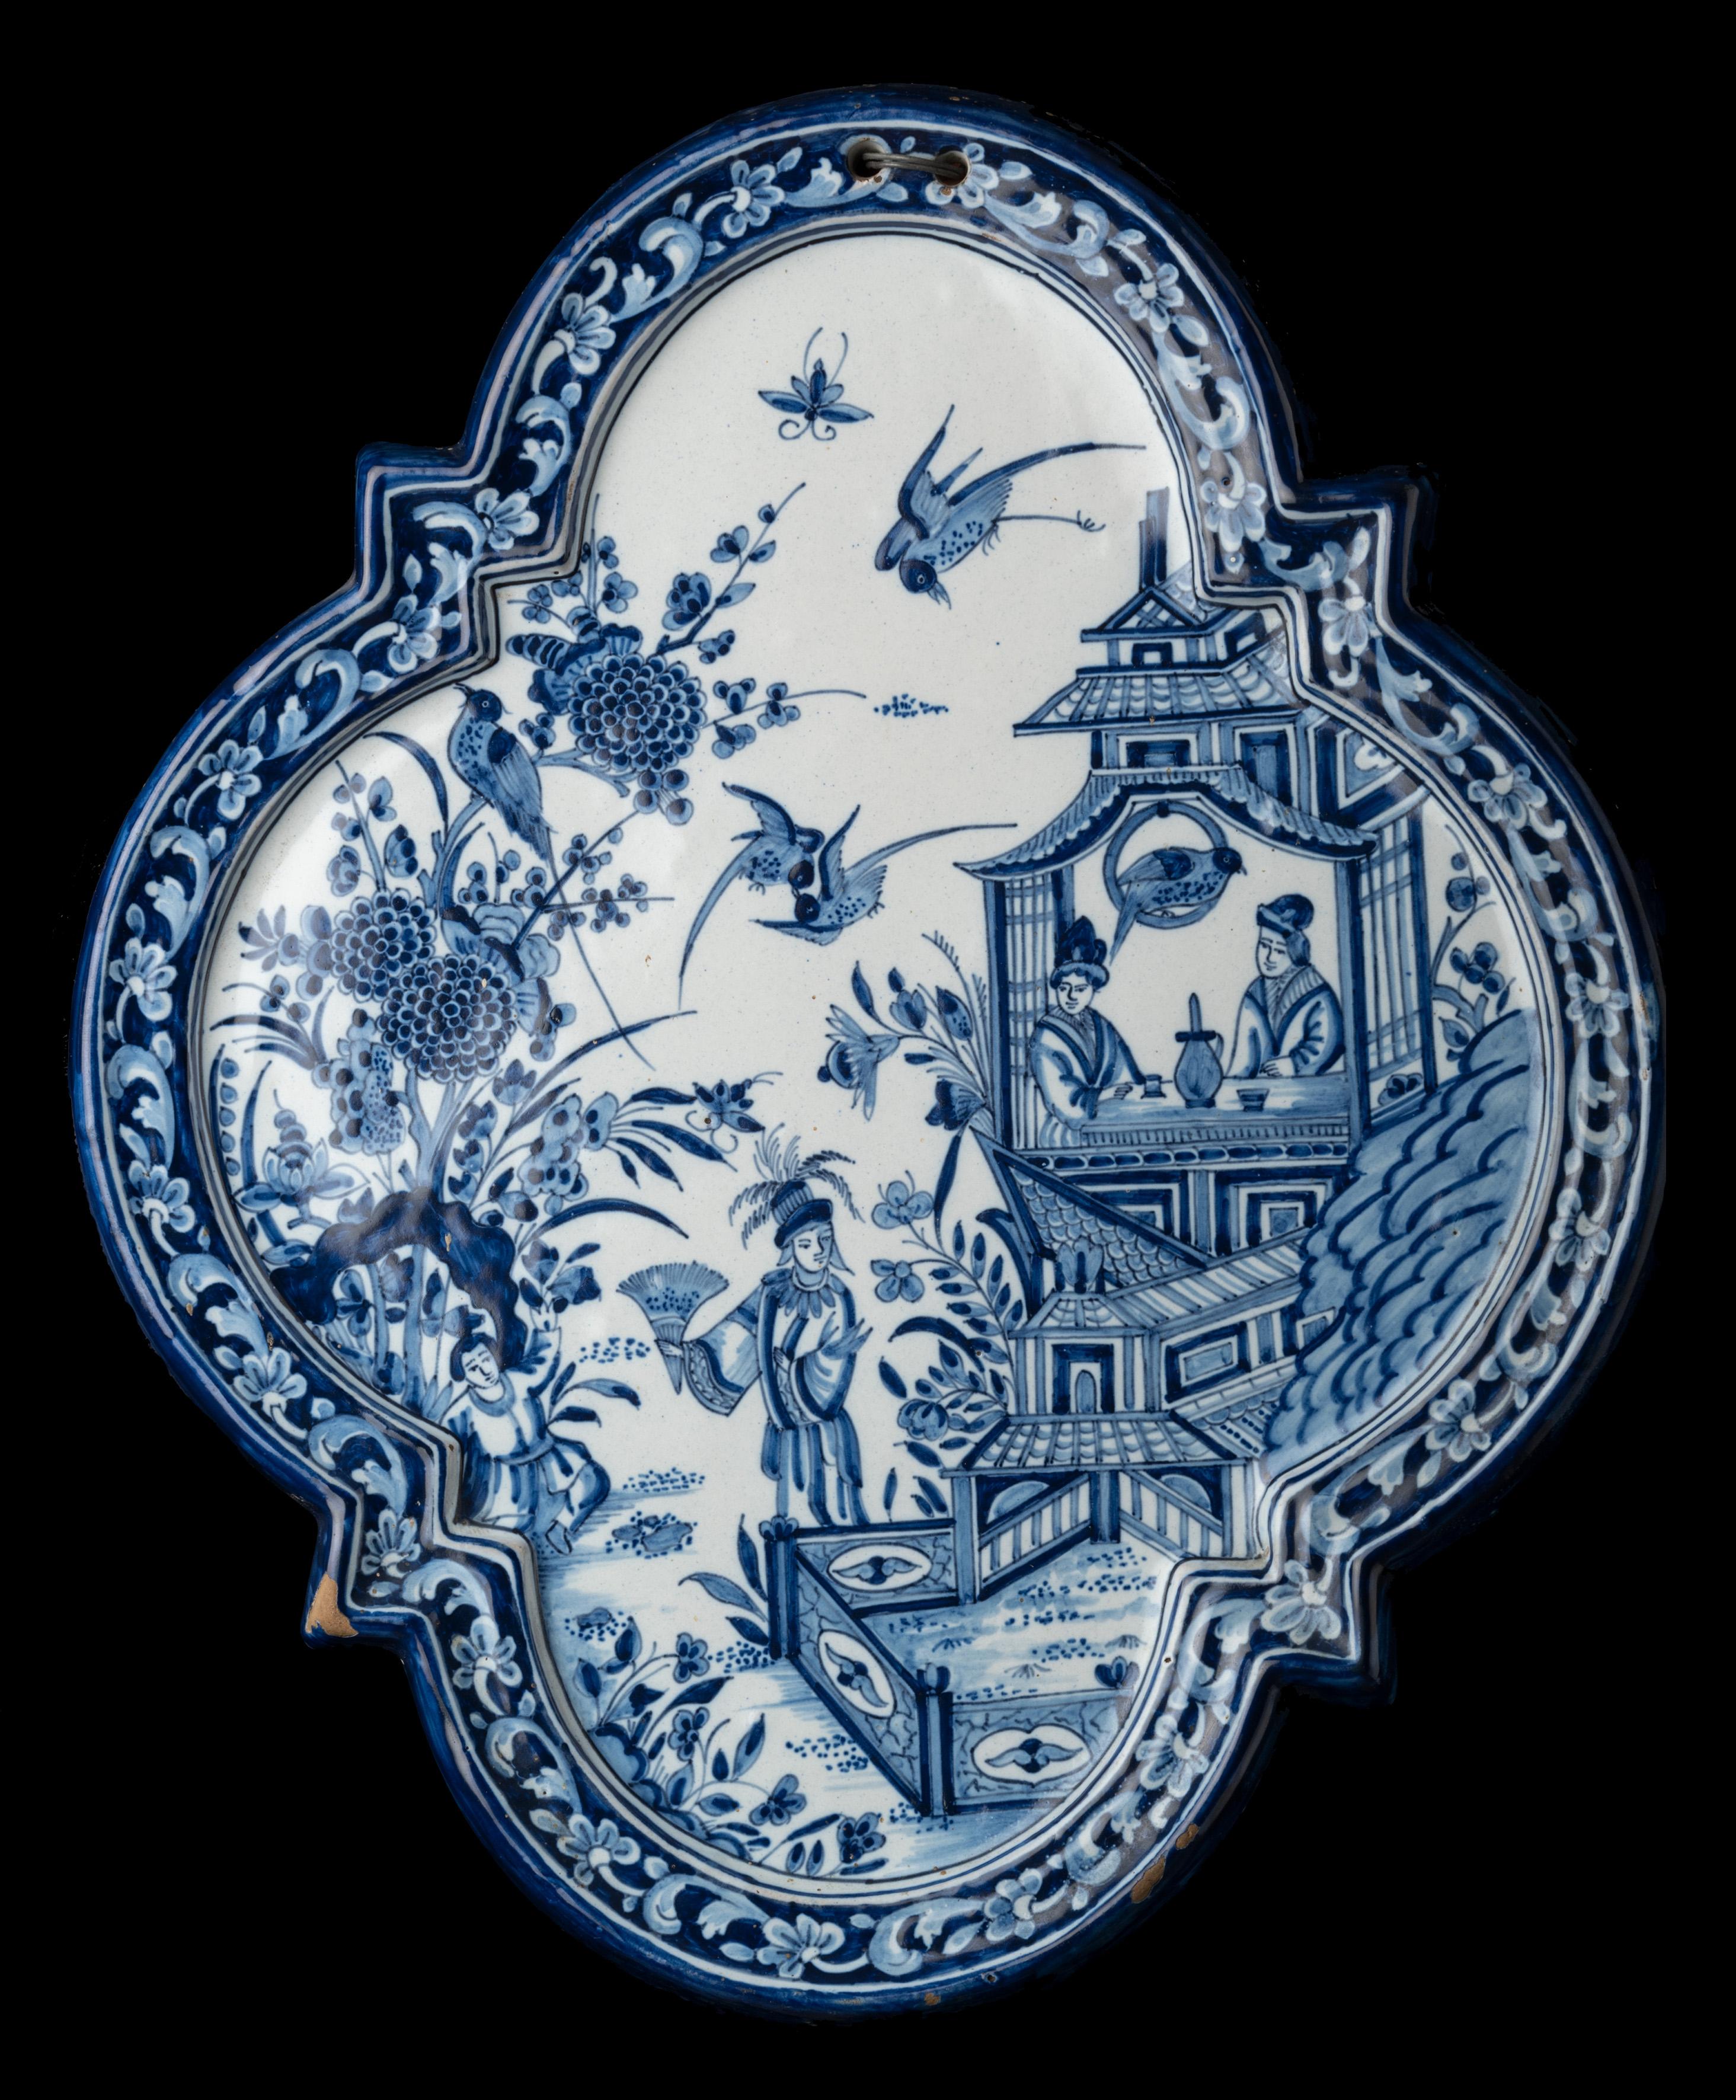 Zinnglasierte Plakette im Stil altniederländischer Delfter Keramik, vierblättrig mit erhabenem Rand, blau bemalt mit einem Chinoiserie-Dekor eines Pavillons in einem orientalischen Garten. Zwei Figuren sitzen im Pavillon, zwei weitere sind im